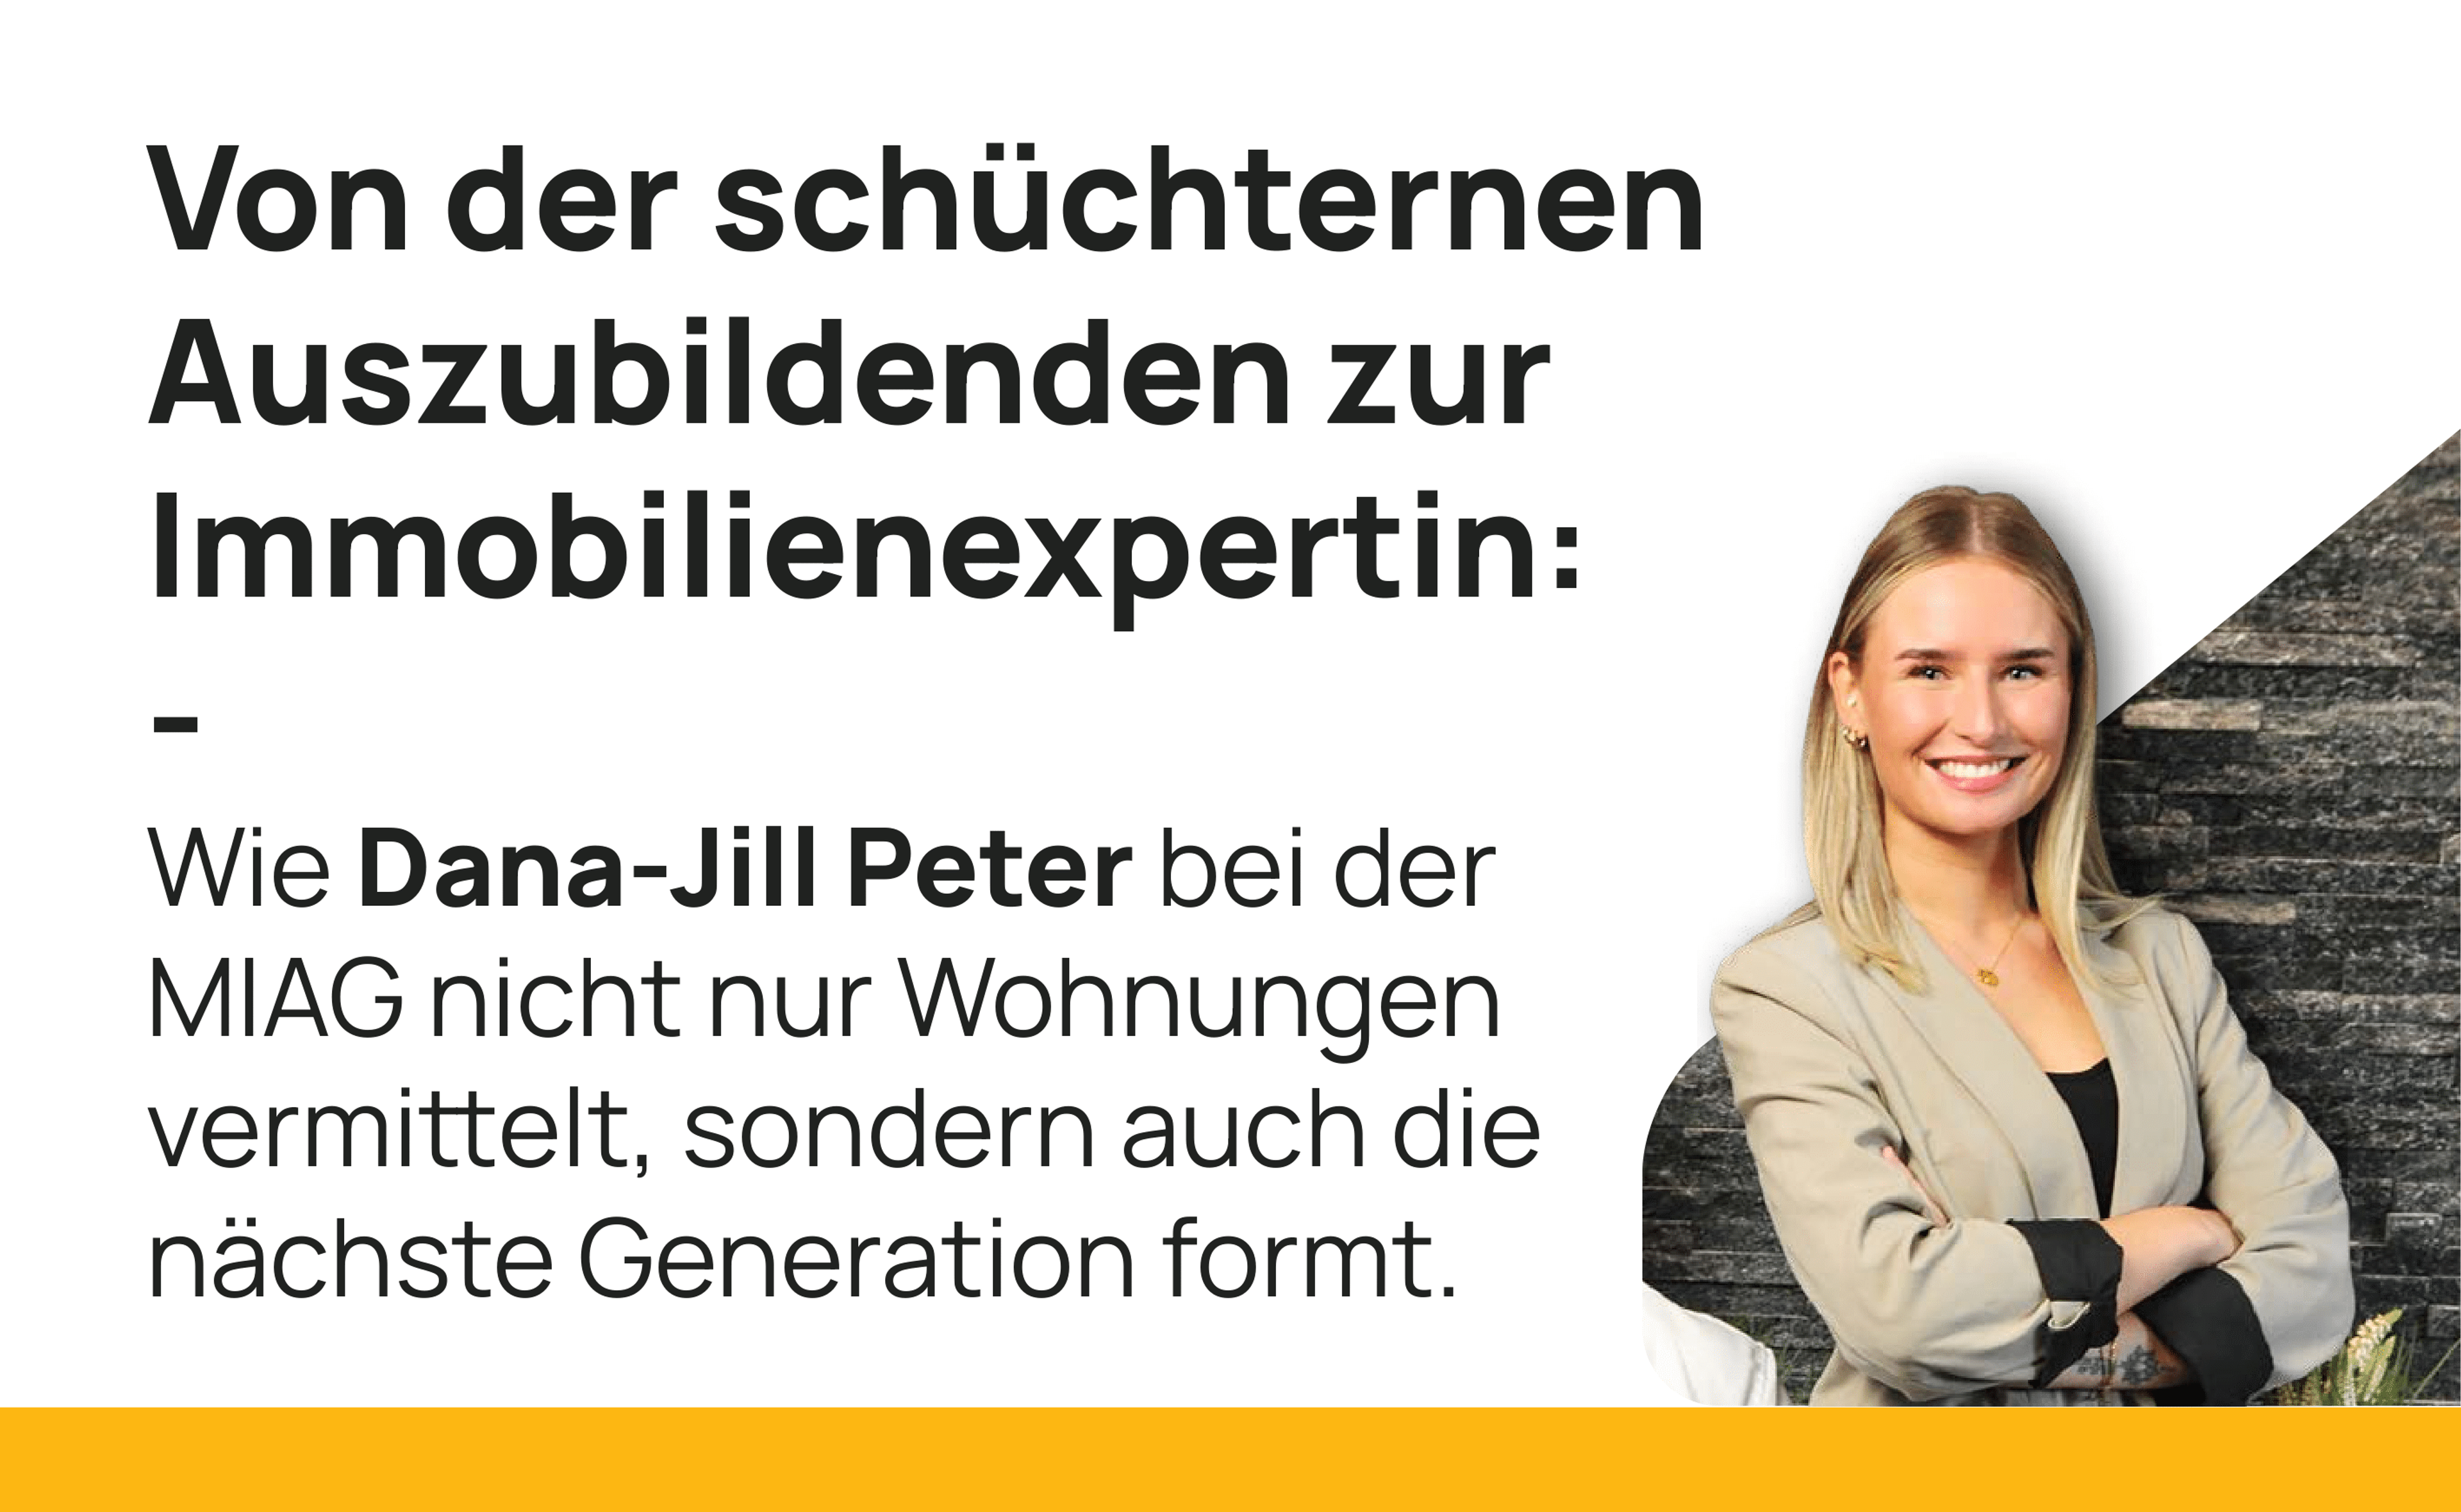 Dana-Jill Peter